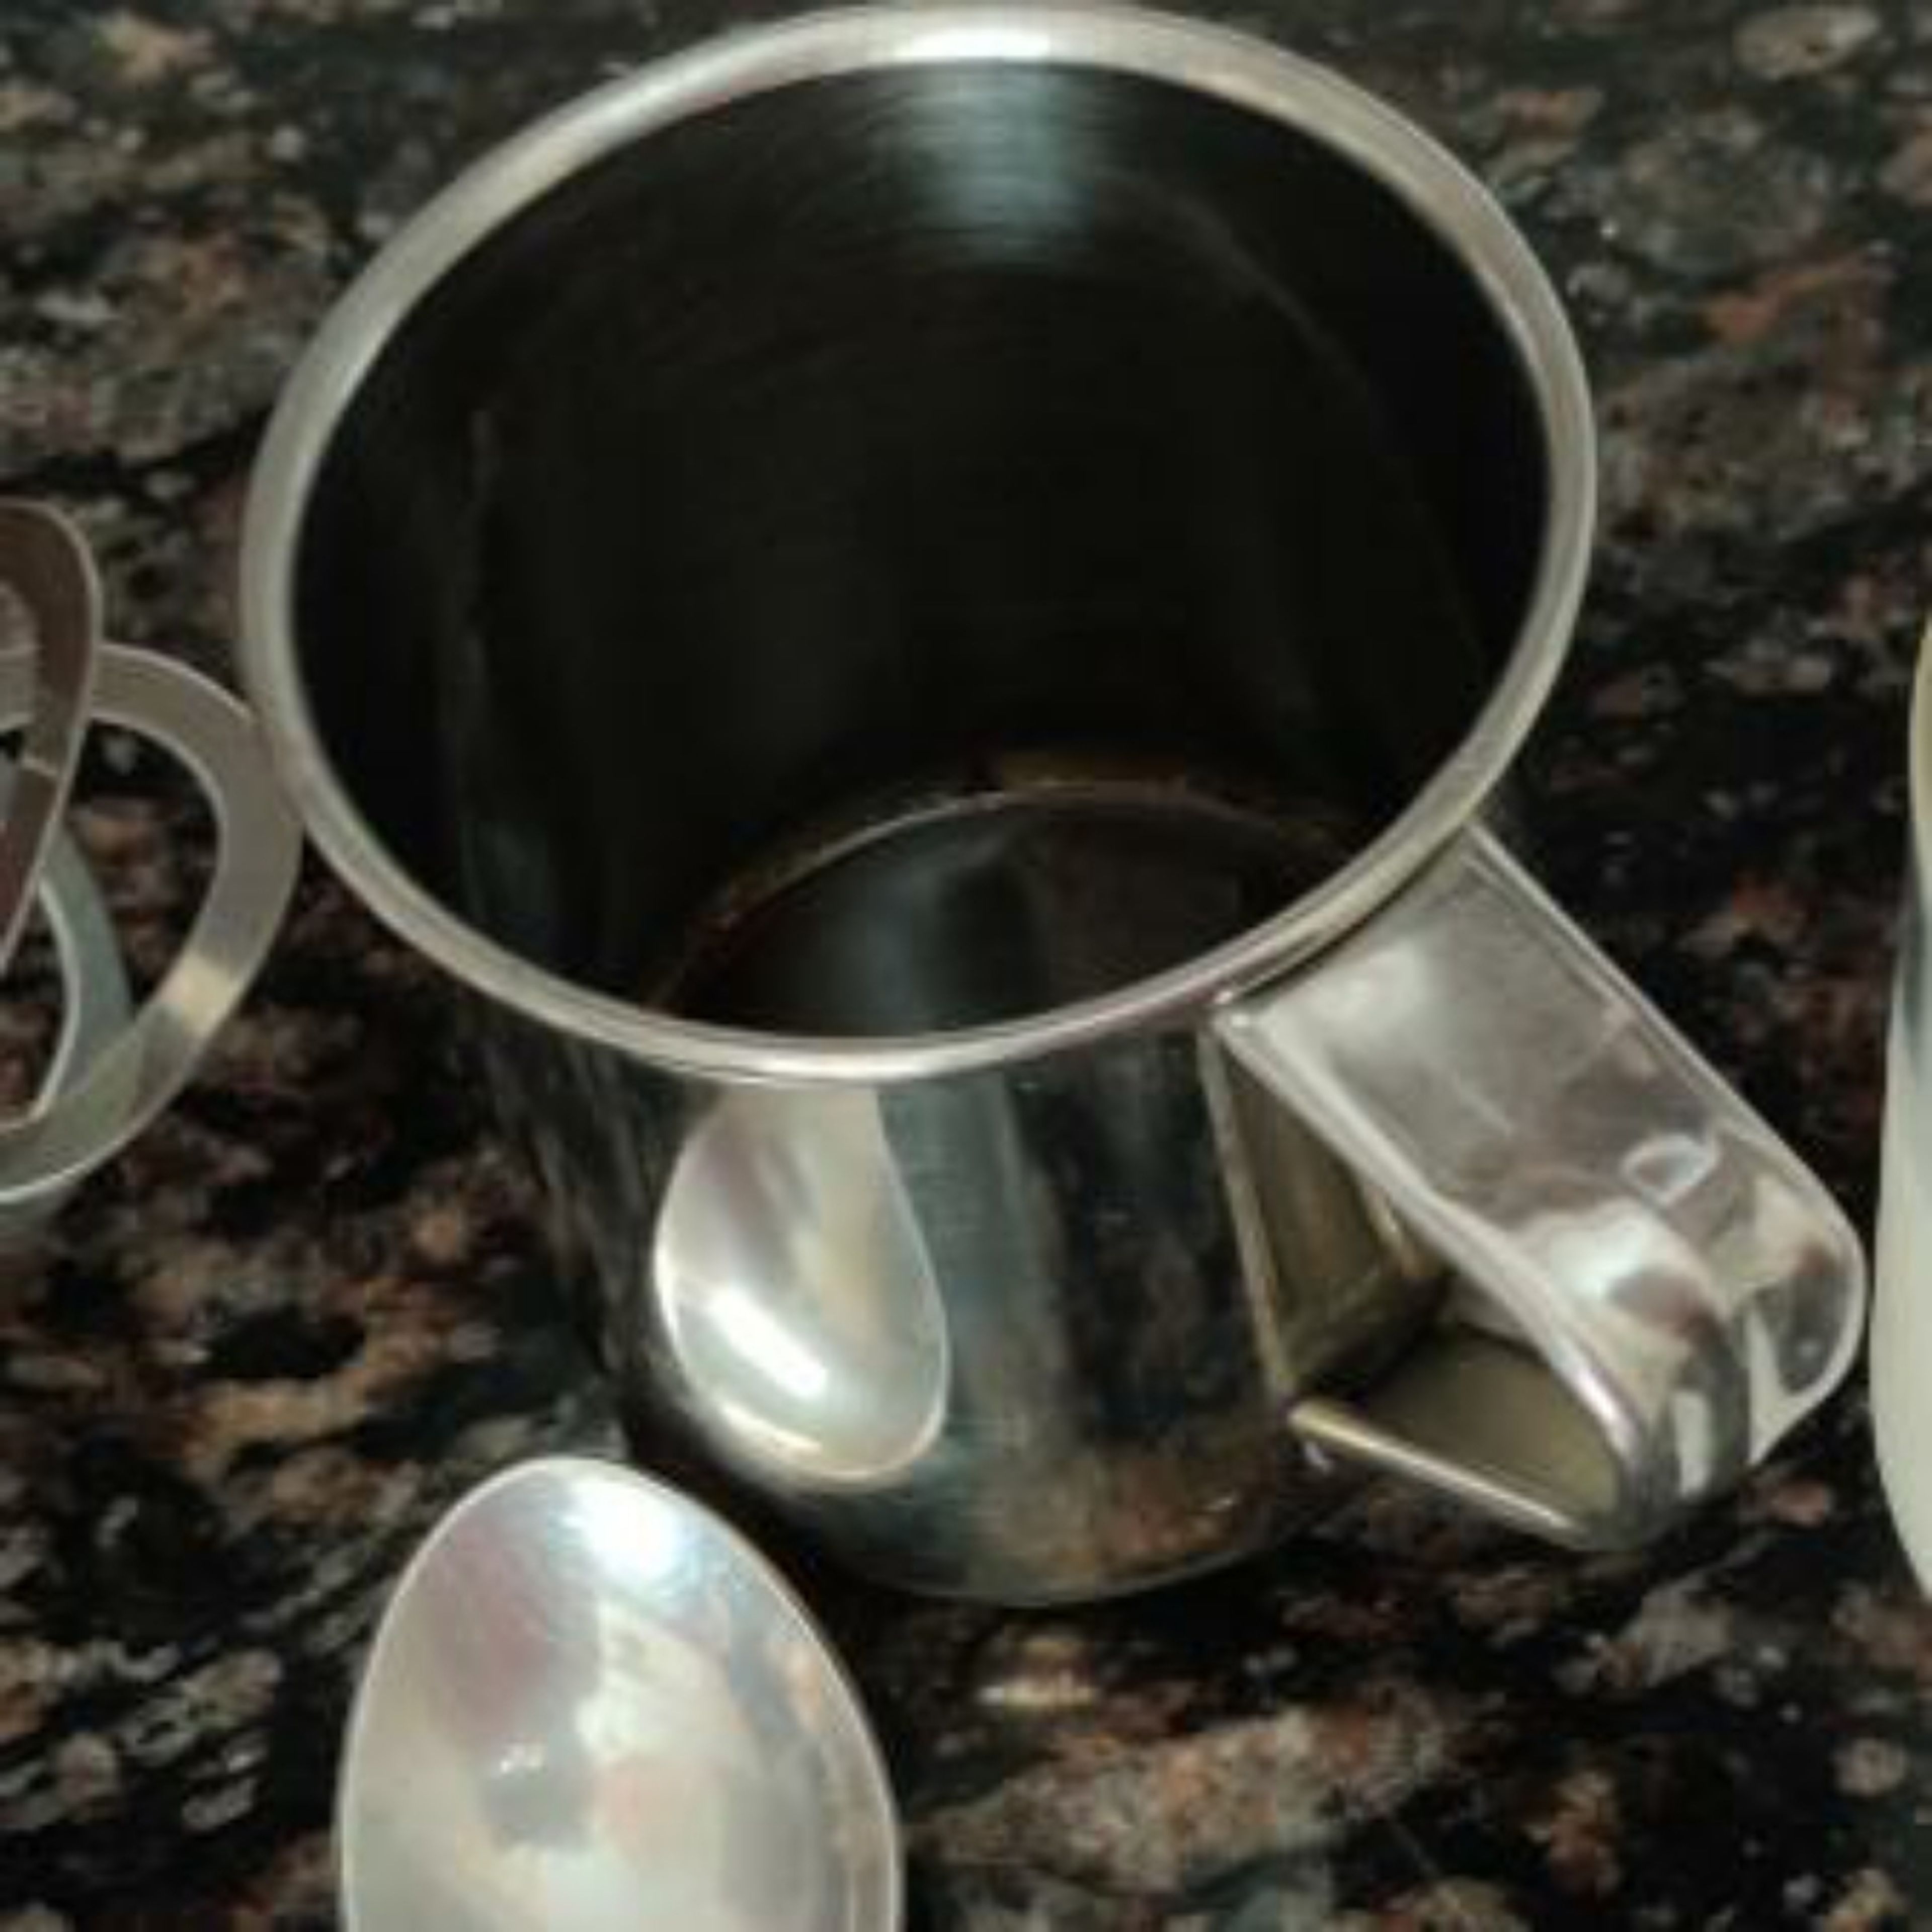 Add coffee powder, sugar and hot water in a mug.